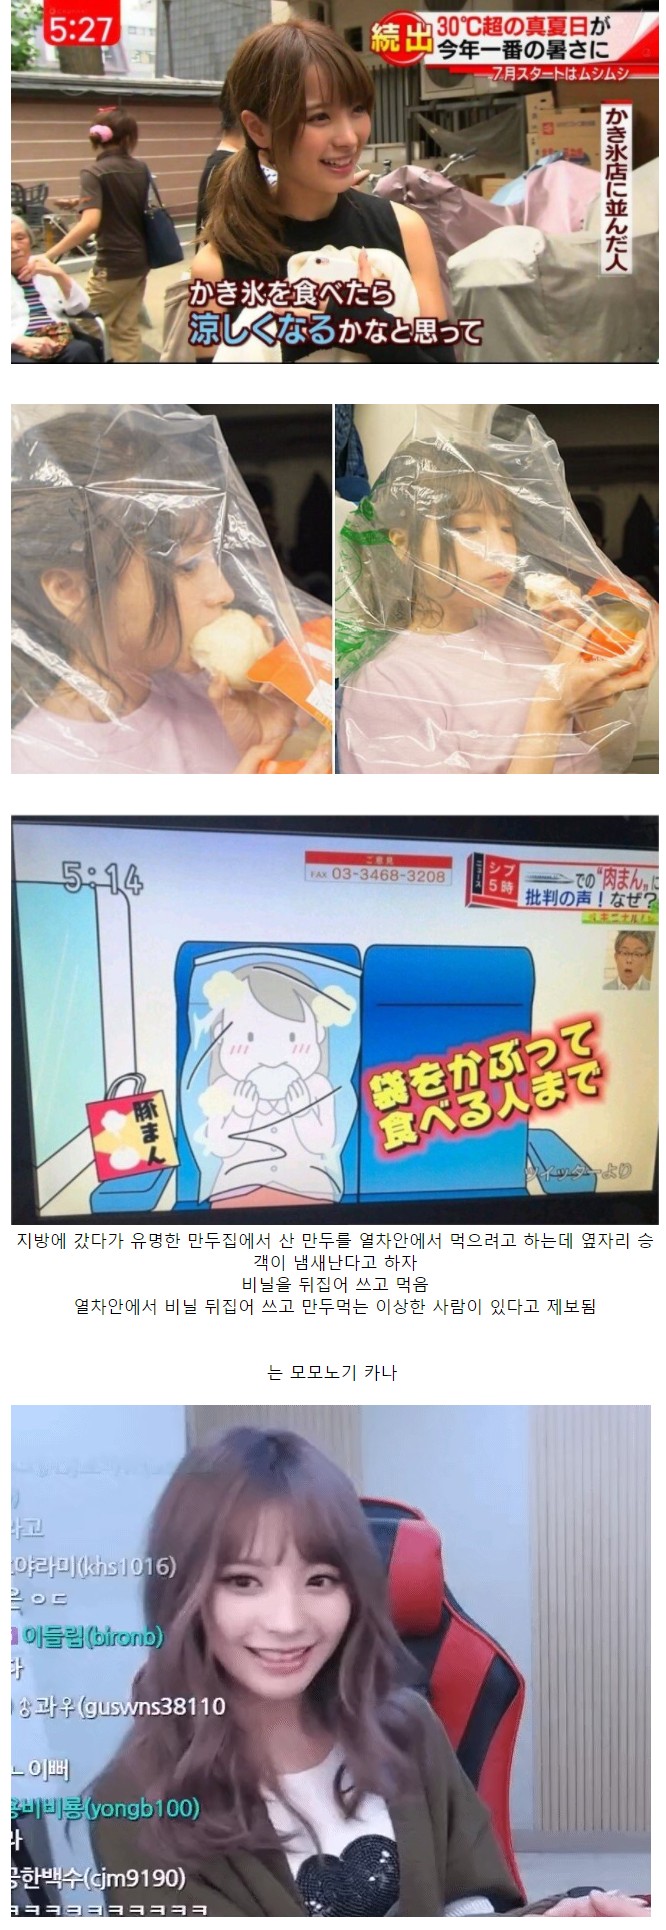 地方に行って列車の中で餃子を食べてニュースに乗ったAV俳優。